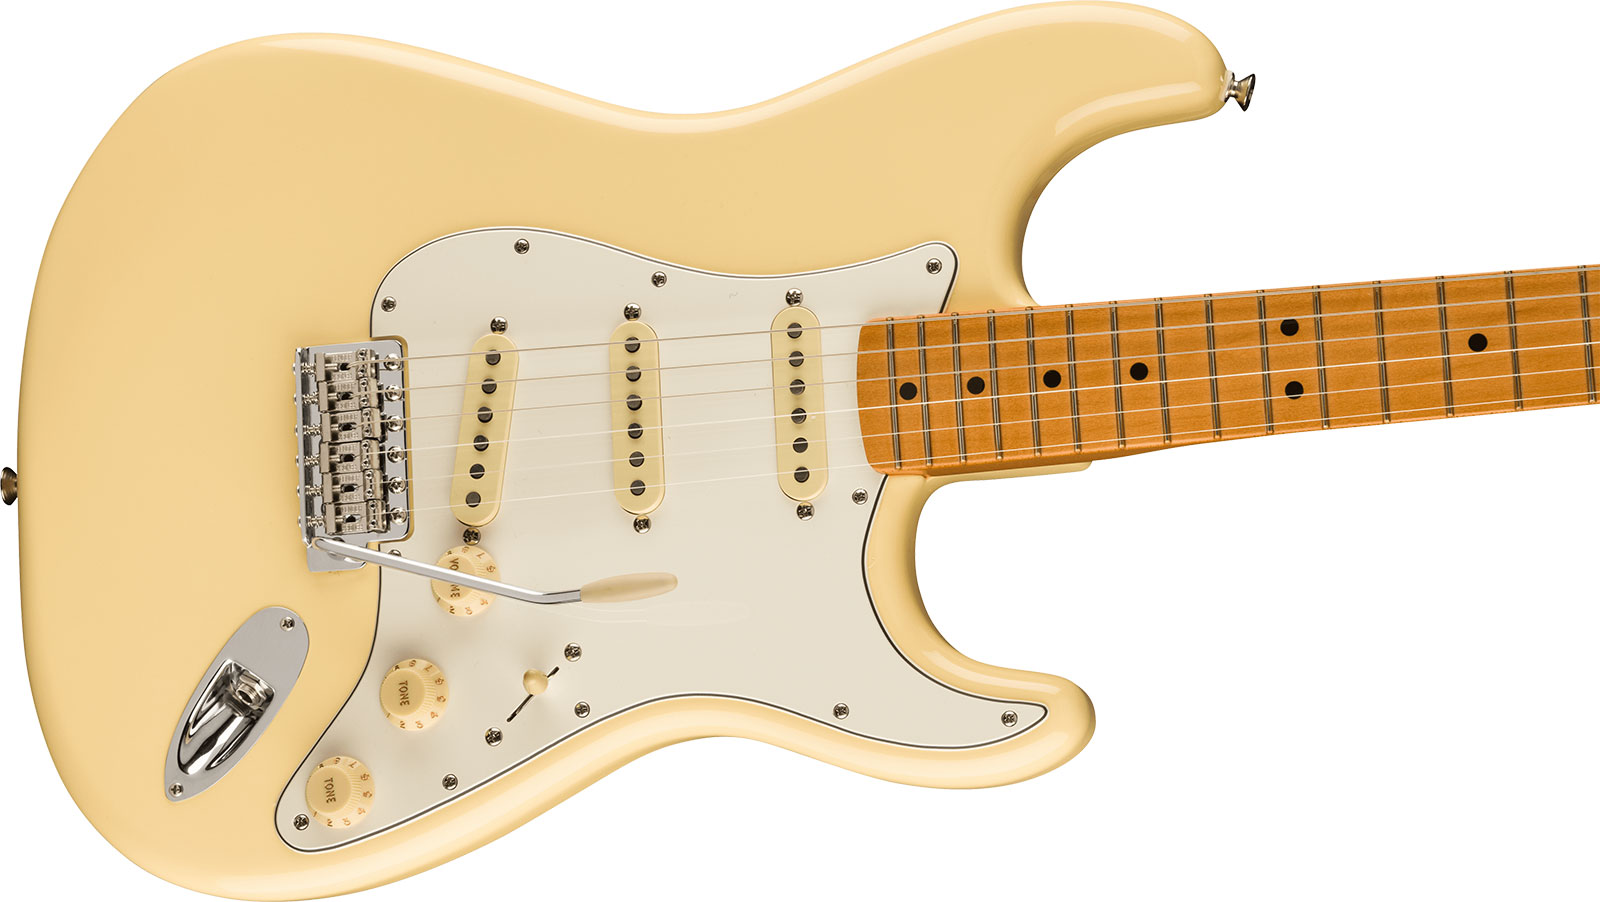 Fender Strat 70s Vintera 2 Mex 3s Trem Mn - Vintage White - Str shape electric guitar - Variation 2